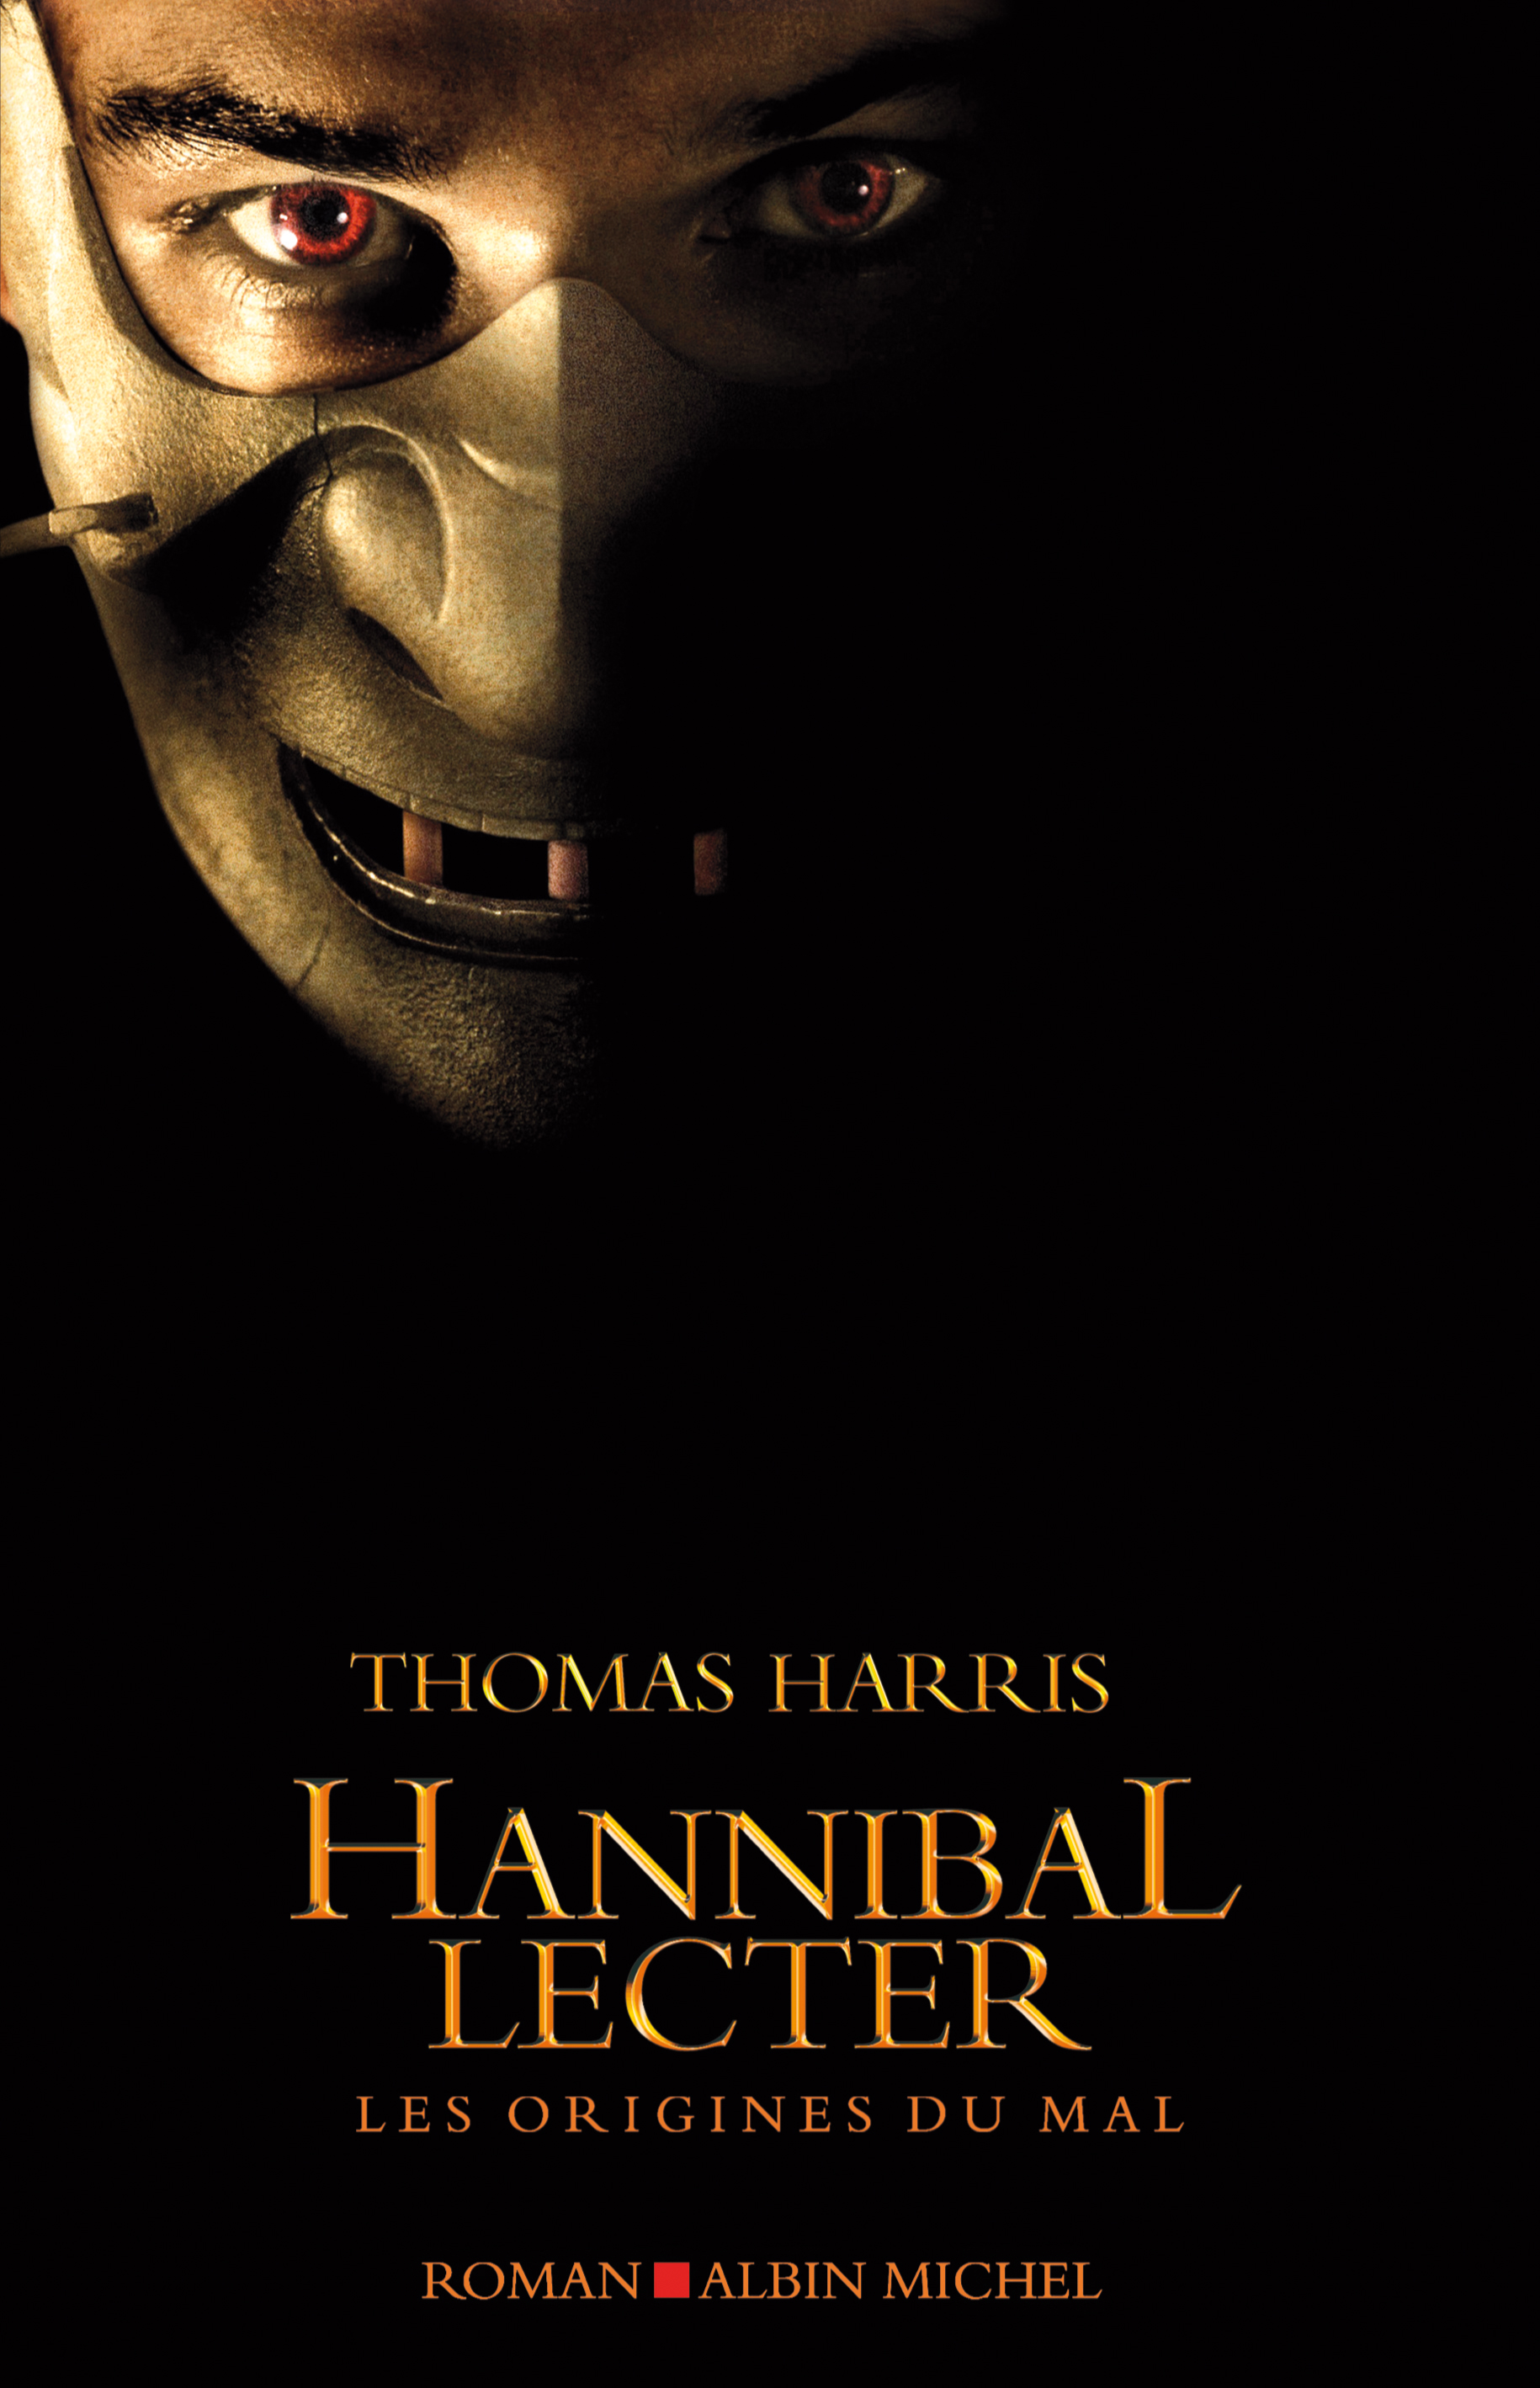 Couverture du livre Hannibal Lecter